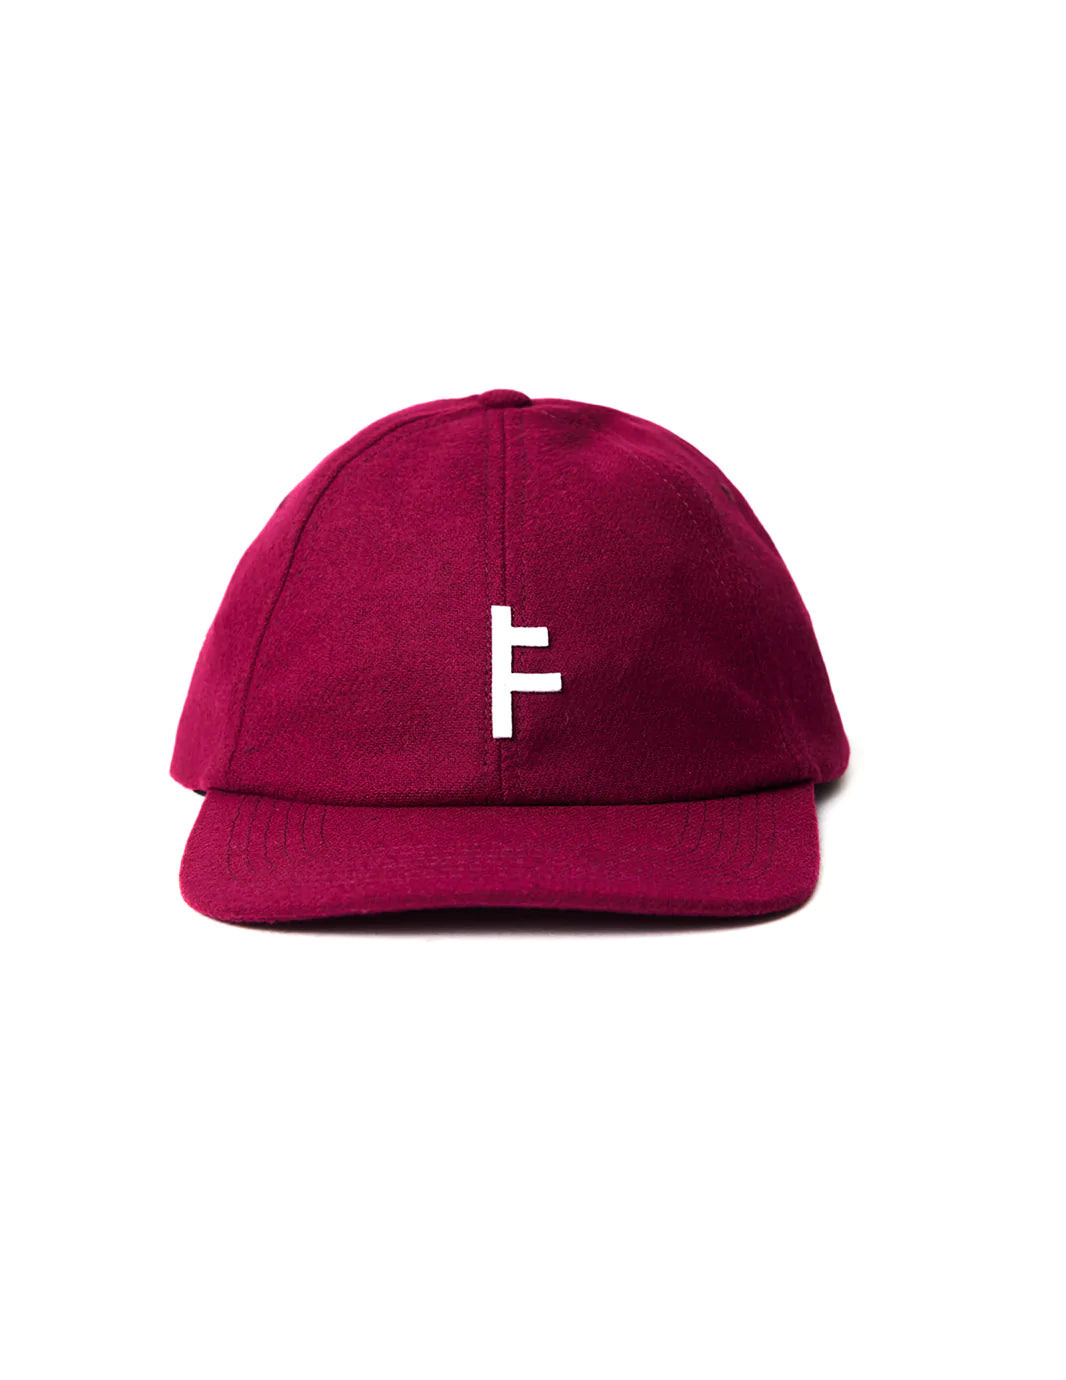 FORMER FRANCHISE CAP